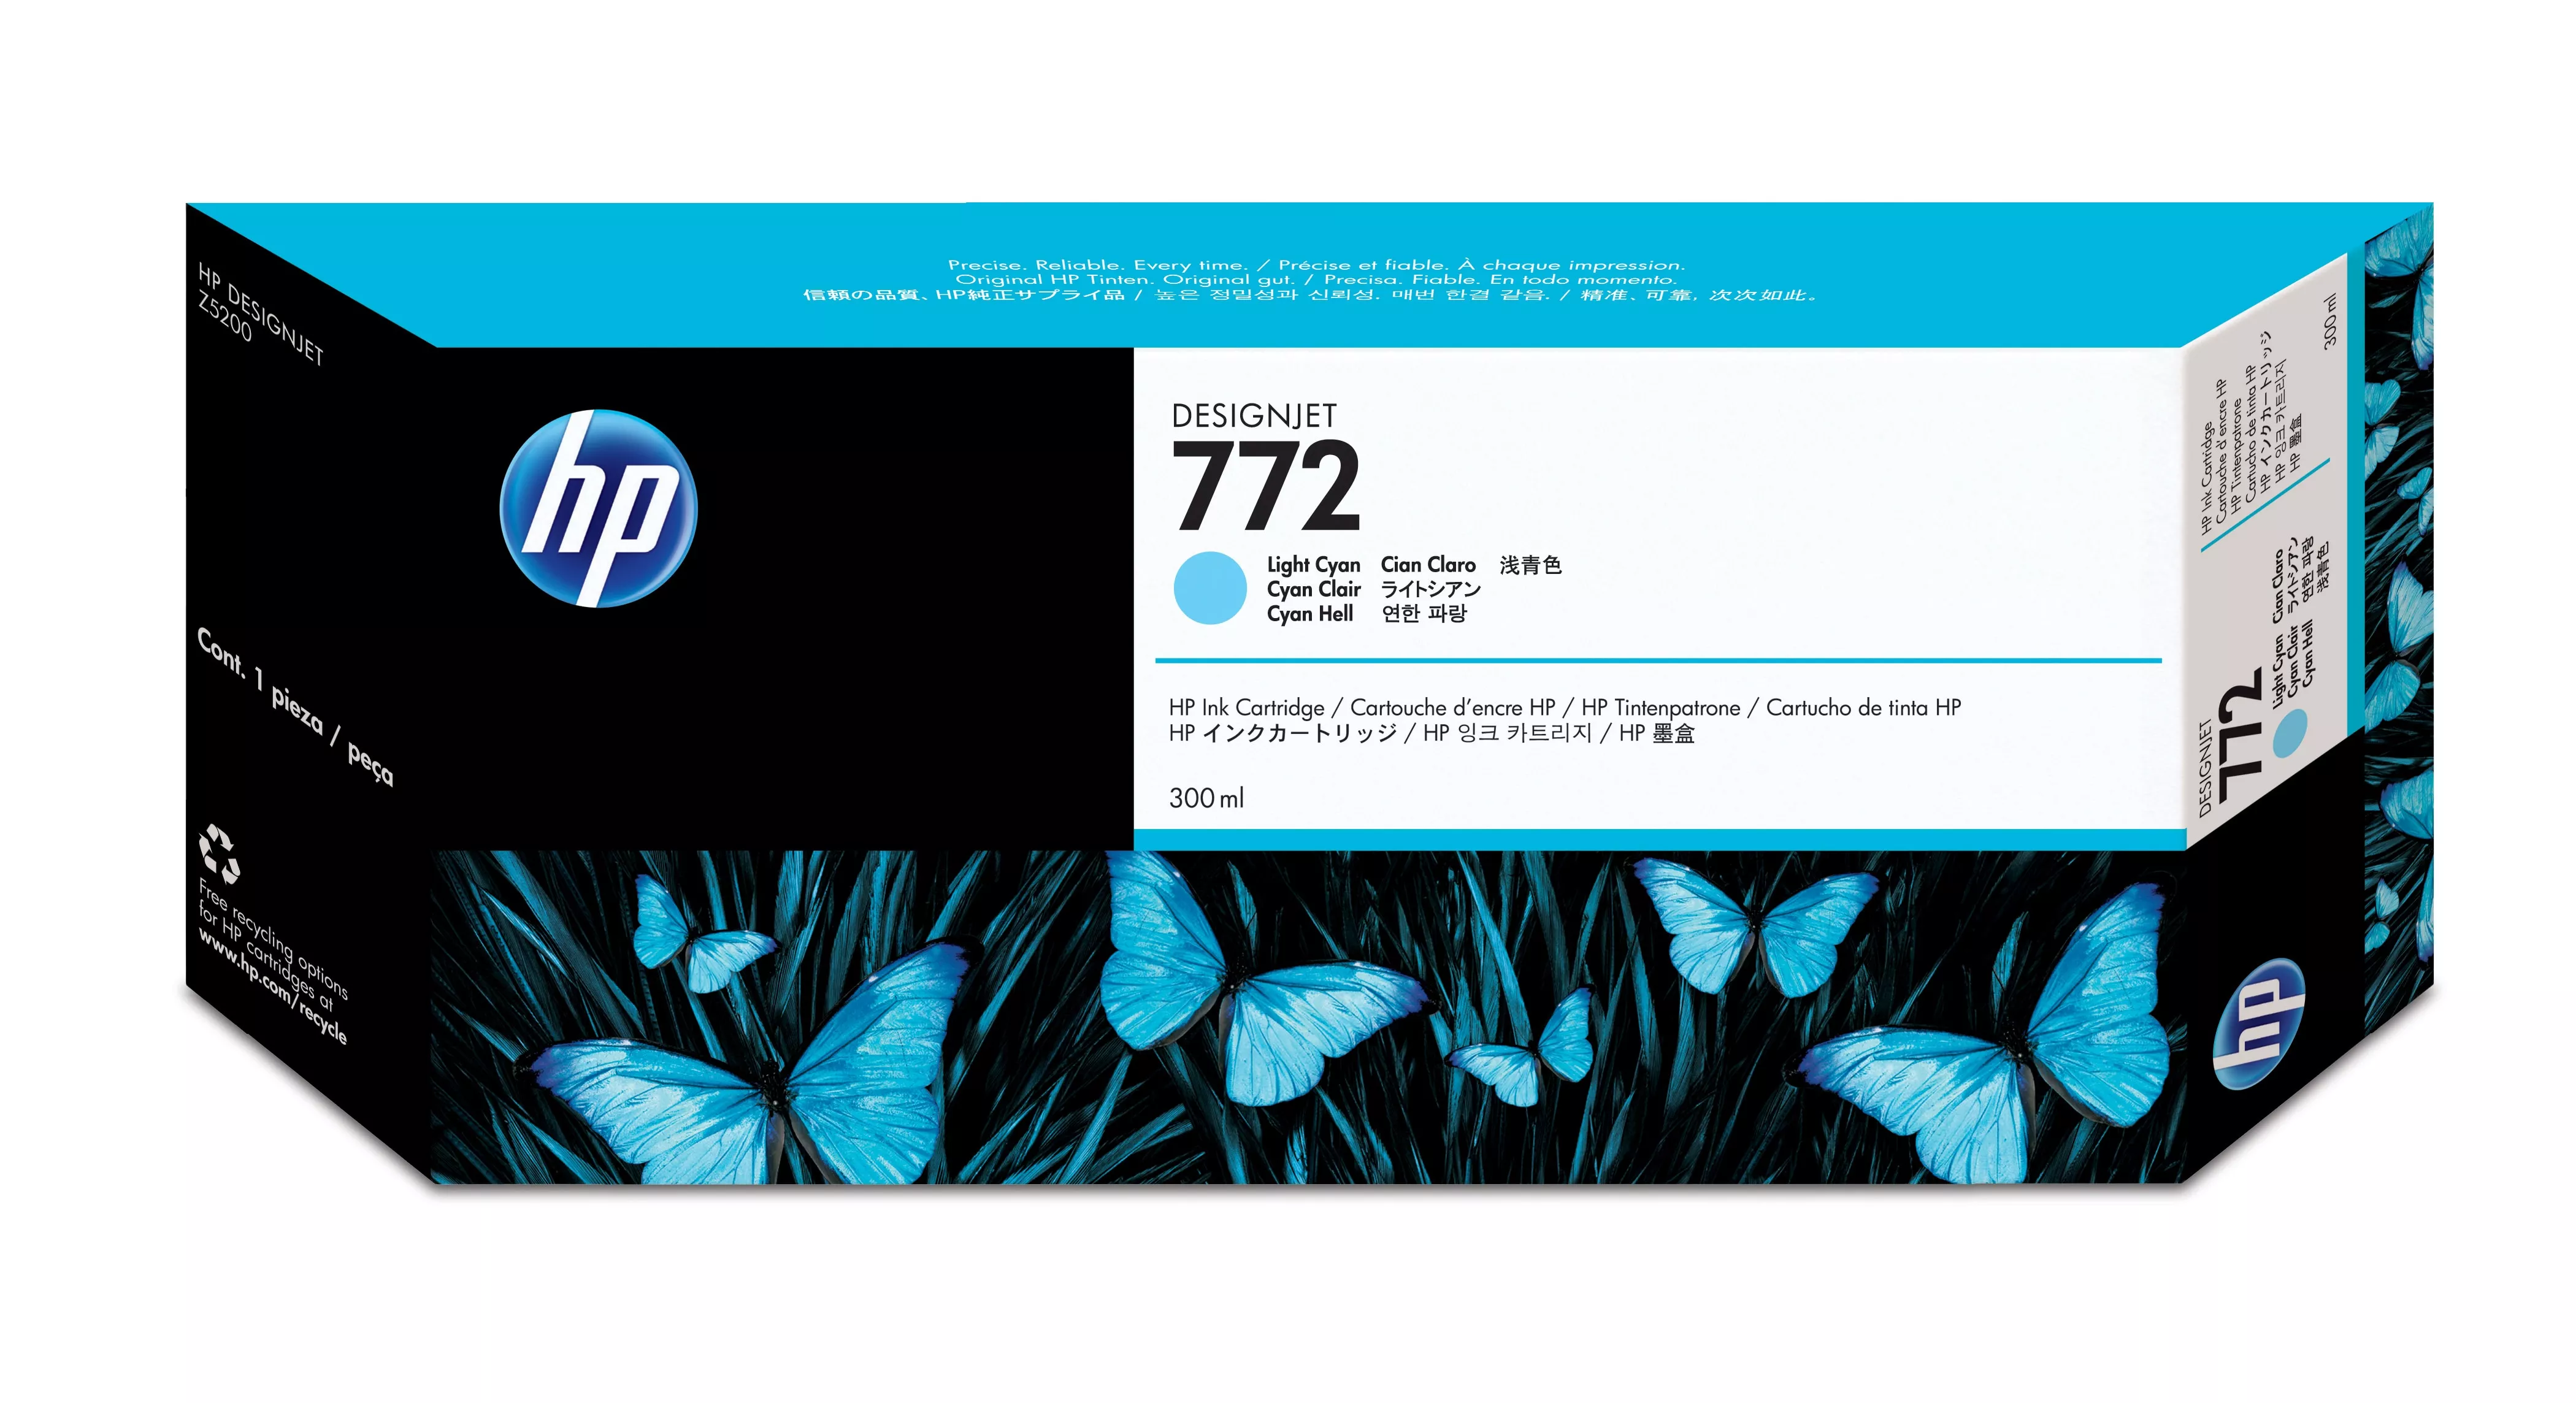 Achat HP 772 original Ink cartridge CN632A light cyan standard et autres produits de la marque HP